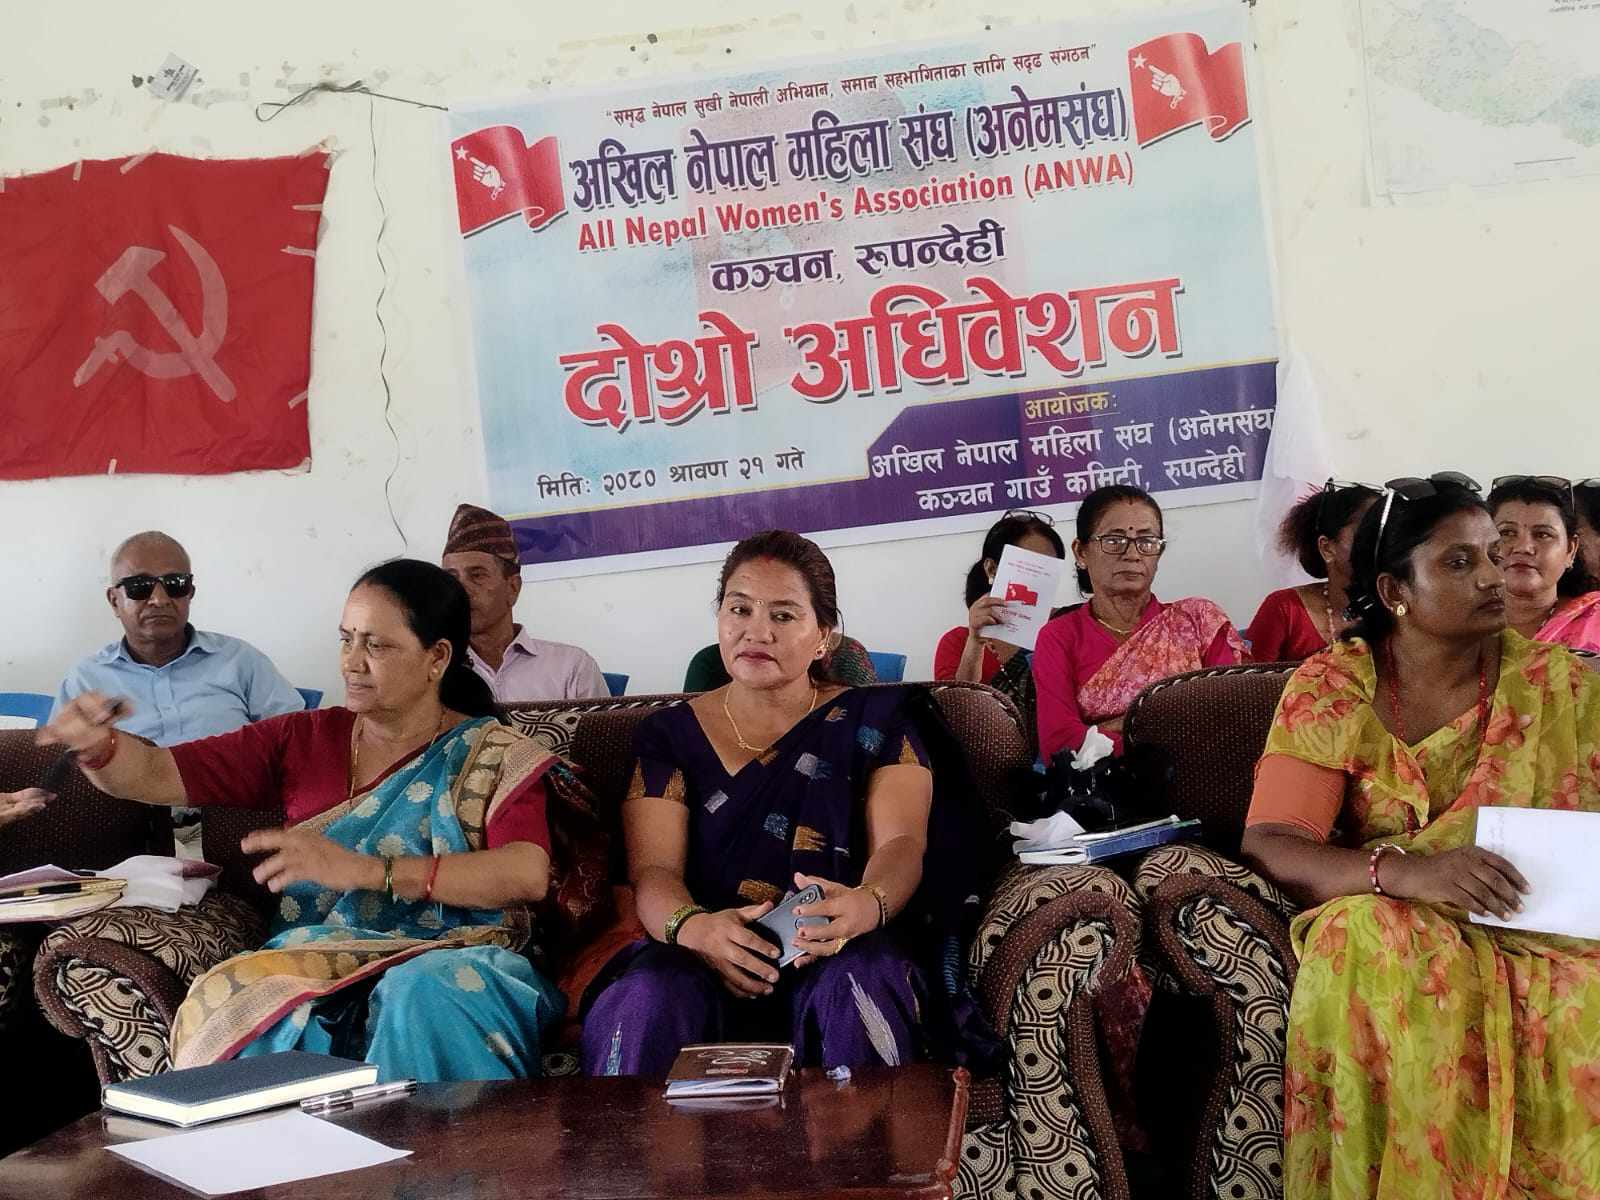 अखिल नेपाल महिला संघ (अनेमसंघ) कञ्चनको दोश्रो सम्मेलन सम्पन्न